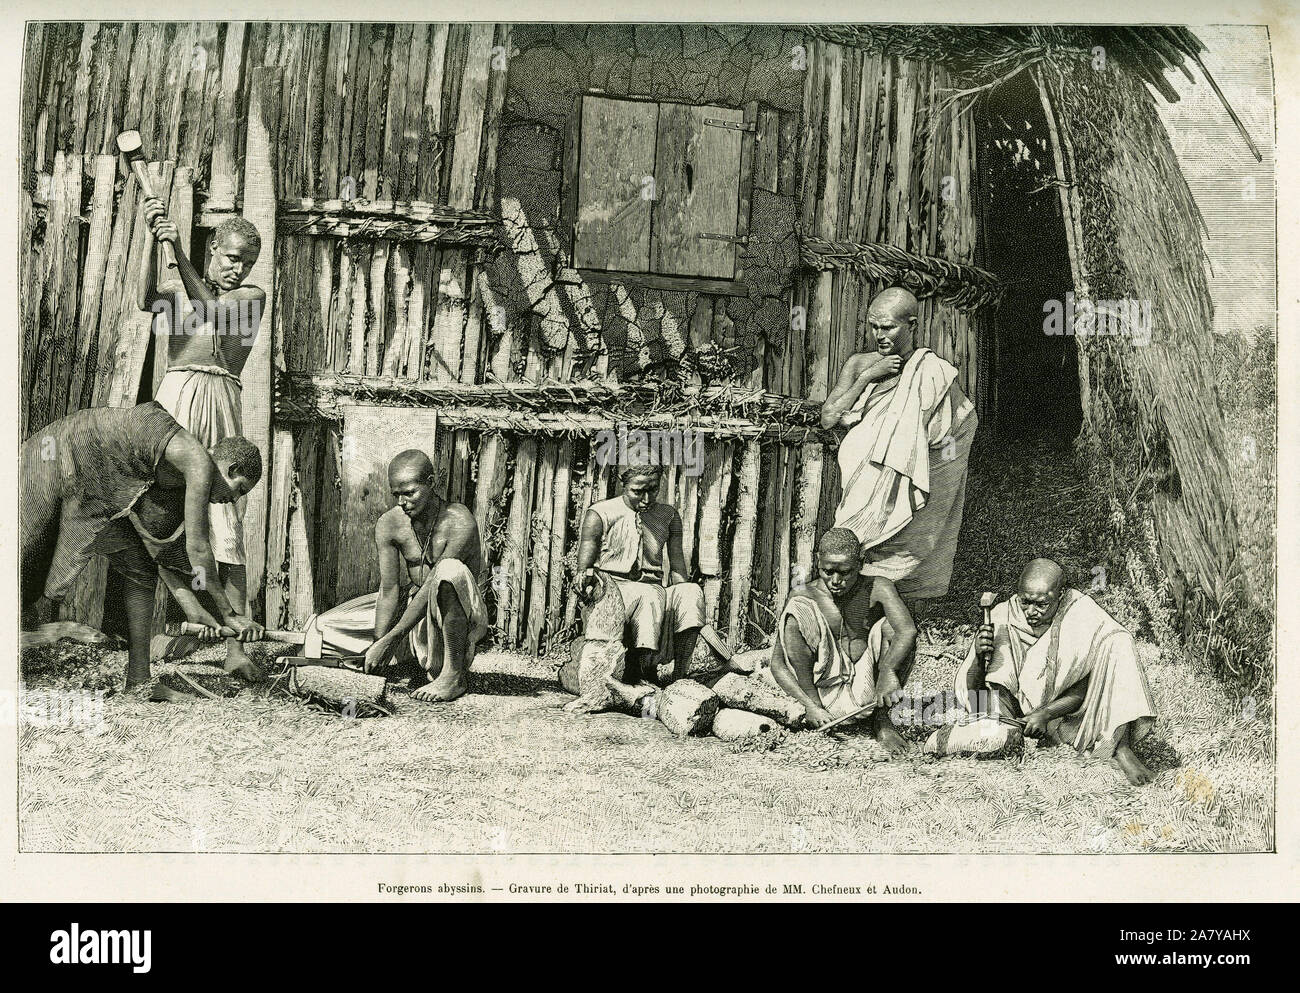 Forgerons abyssins. Gravure de Thiriat, d'apres une photographie , pour illustrer le recit Voyage au Choa ( Abyssinie meridionale), en 1884-1888, par Stock Photo